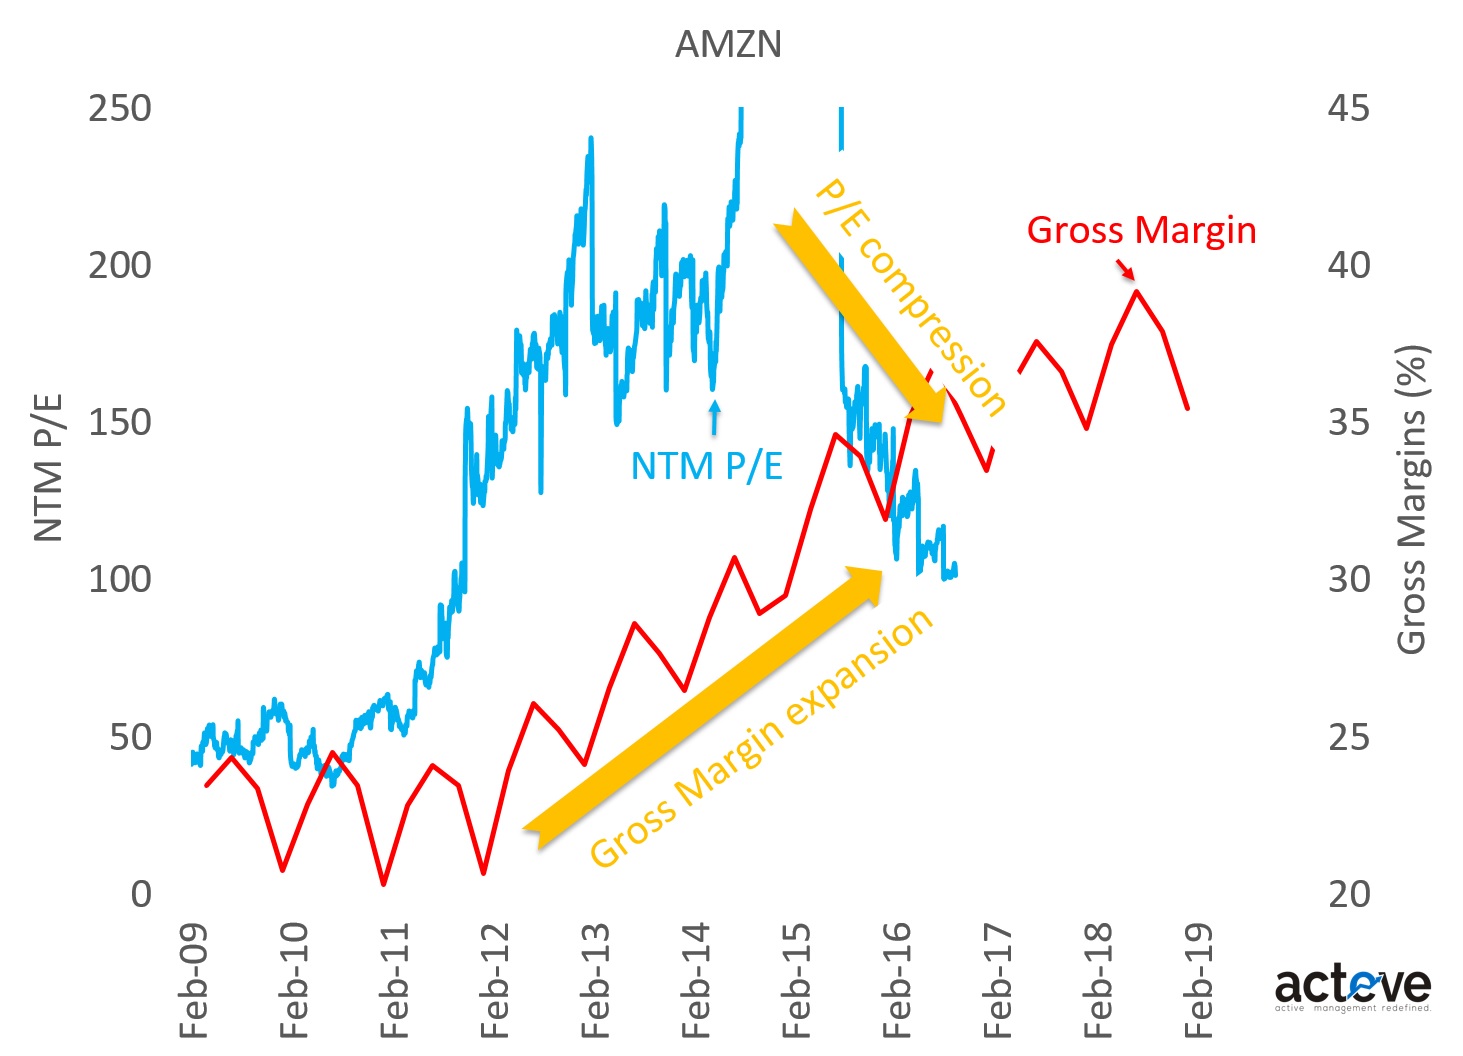 AMZN P/E vs. Gross Margin